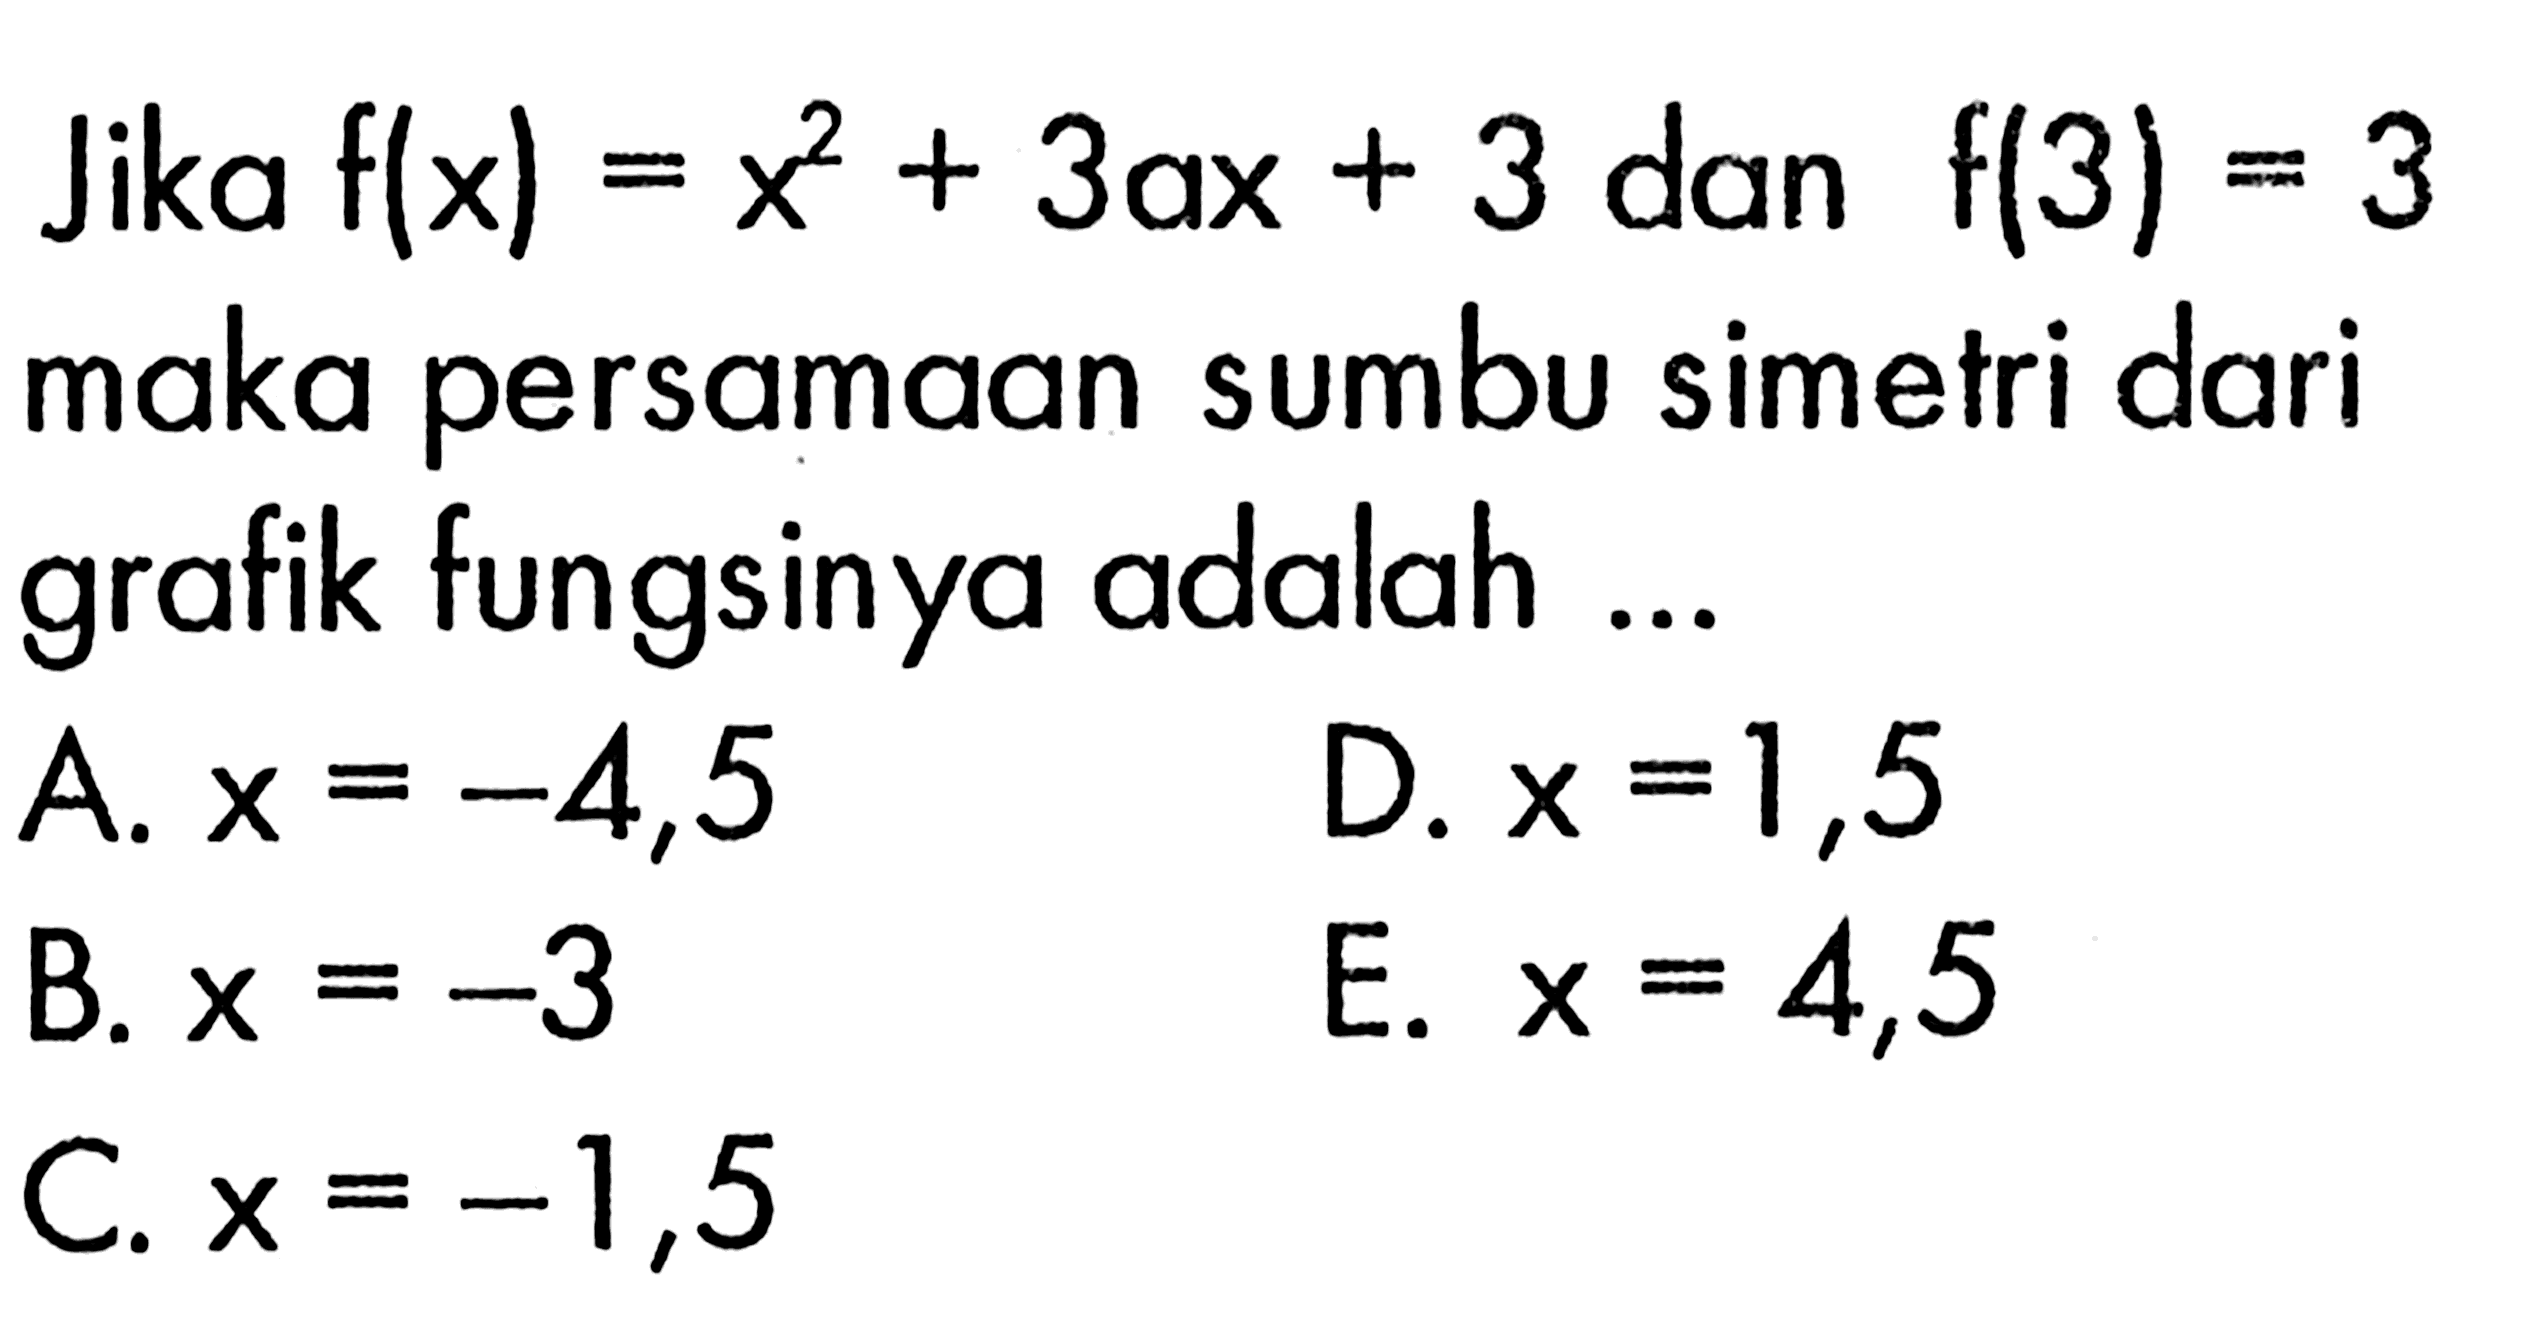 Jika f(x)=x^2+3ax+3 dan f(3)=3 maka persamaan sumbu simetri dari grafik fungsinya adalah ...